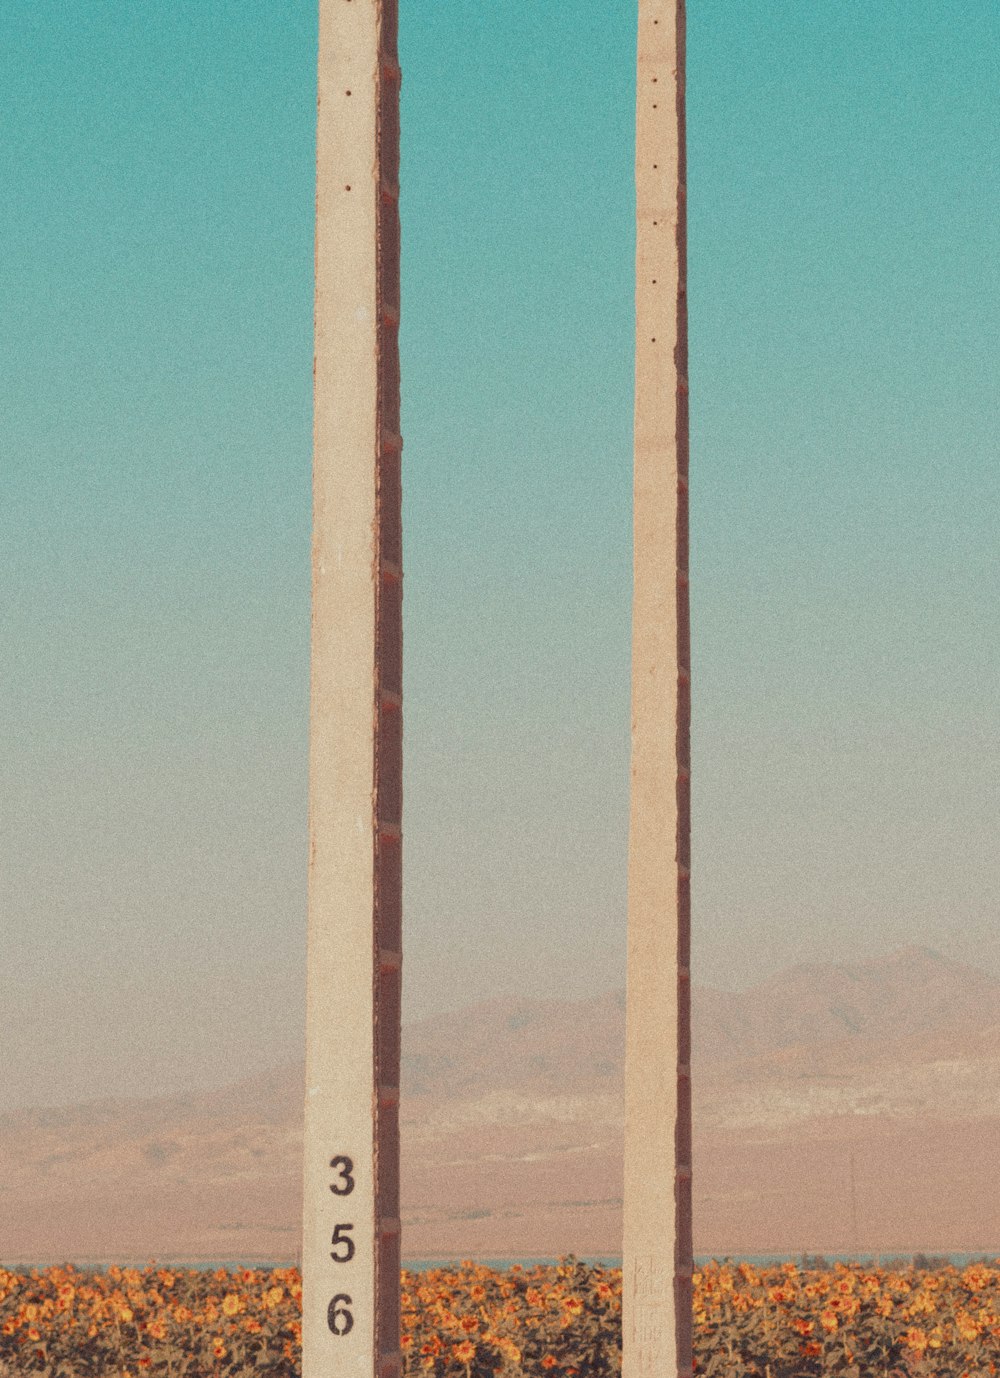 들판 한가운데에 앉아있는 두 개의 높은 기둥